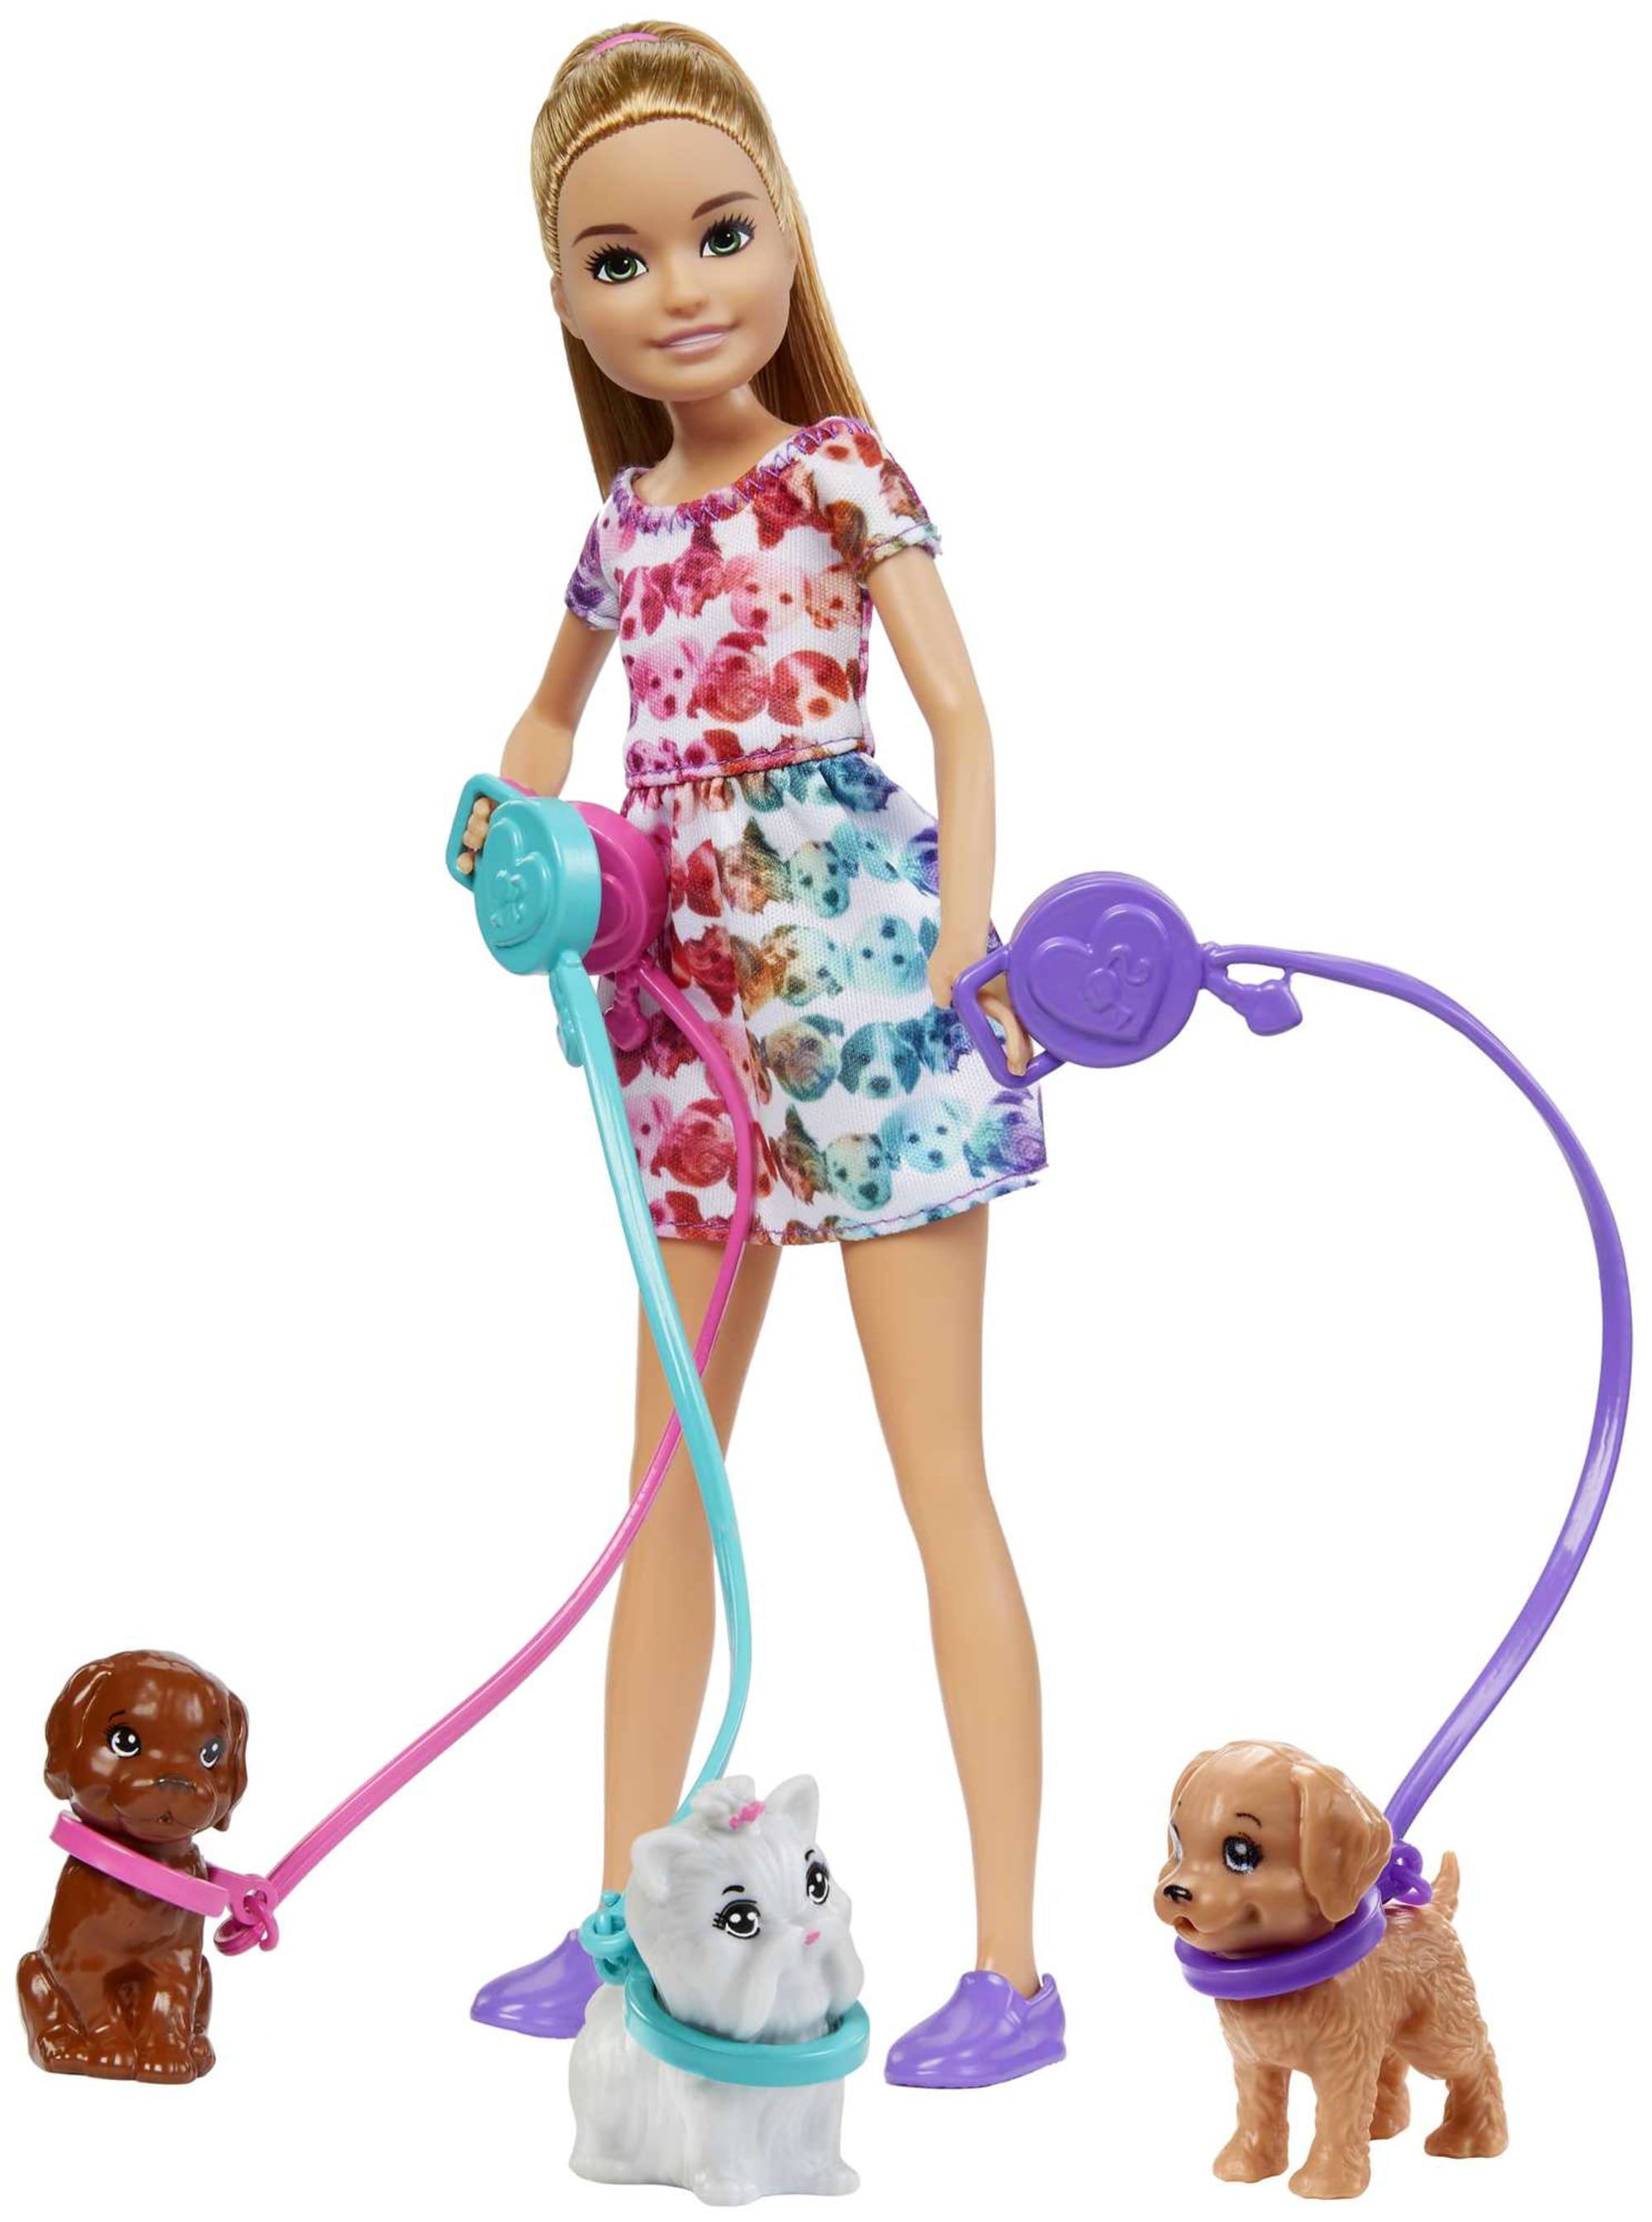 2019 Barbie Stacie Doll #5